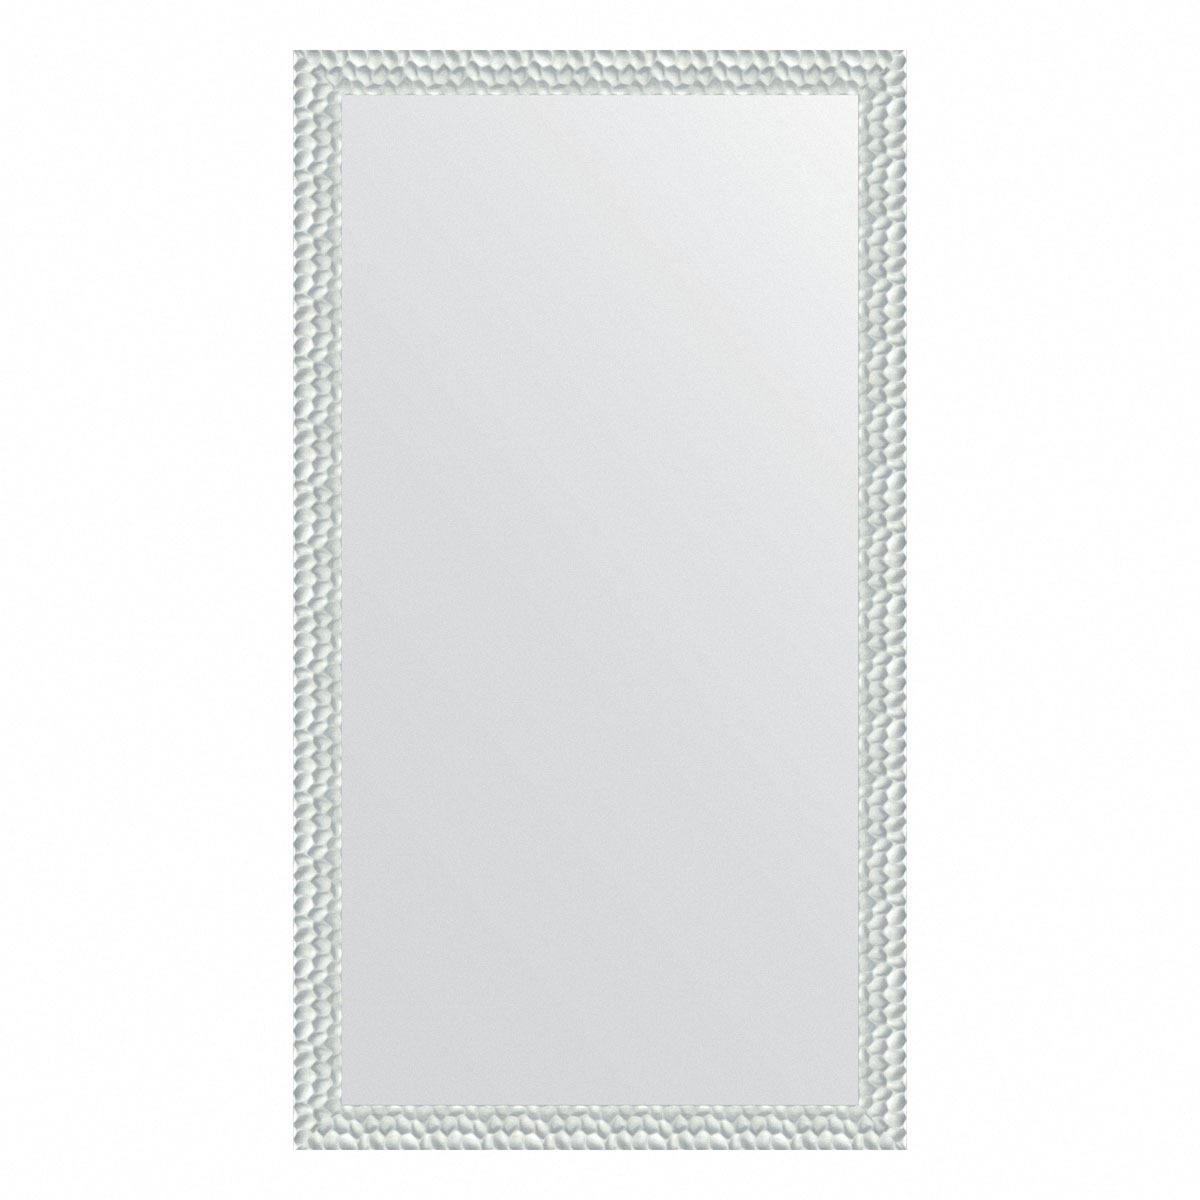 Зеркало напольное в багетной раме Evoform перламутровые дюны 89 мм 112x202 см зеркало напольное с гравировкой в багетной раме evoform медная кольчуга 88 мм 112x202 см